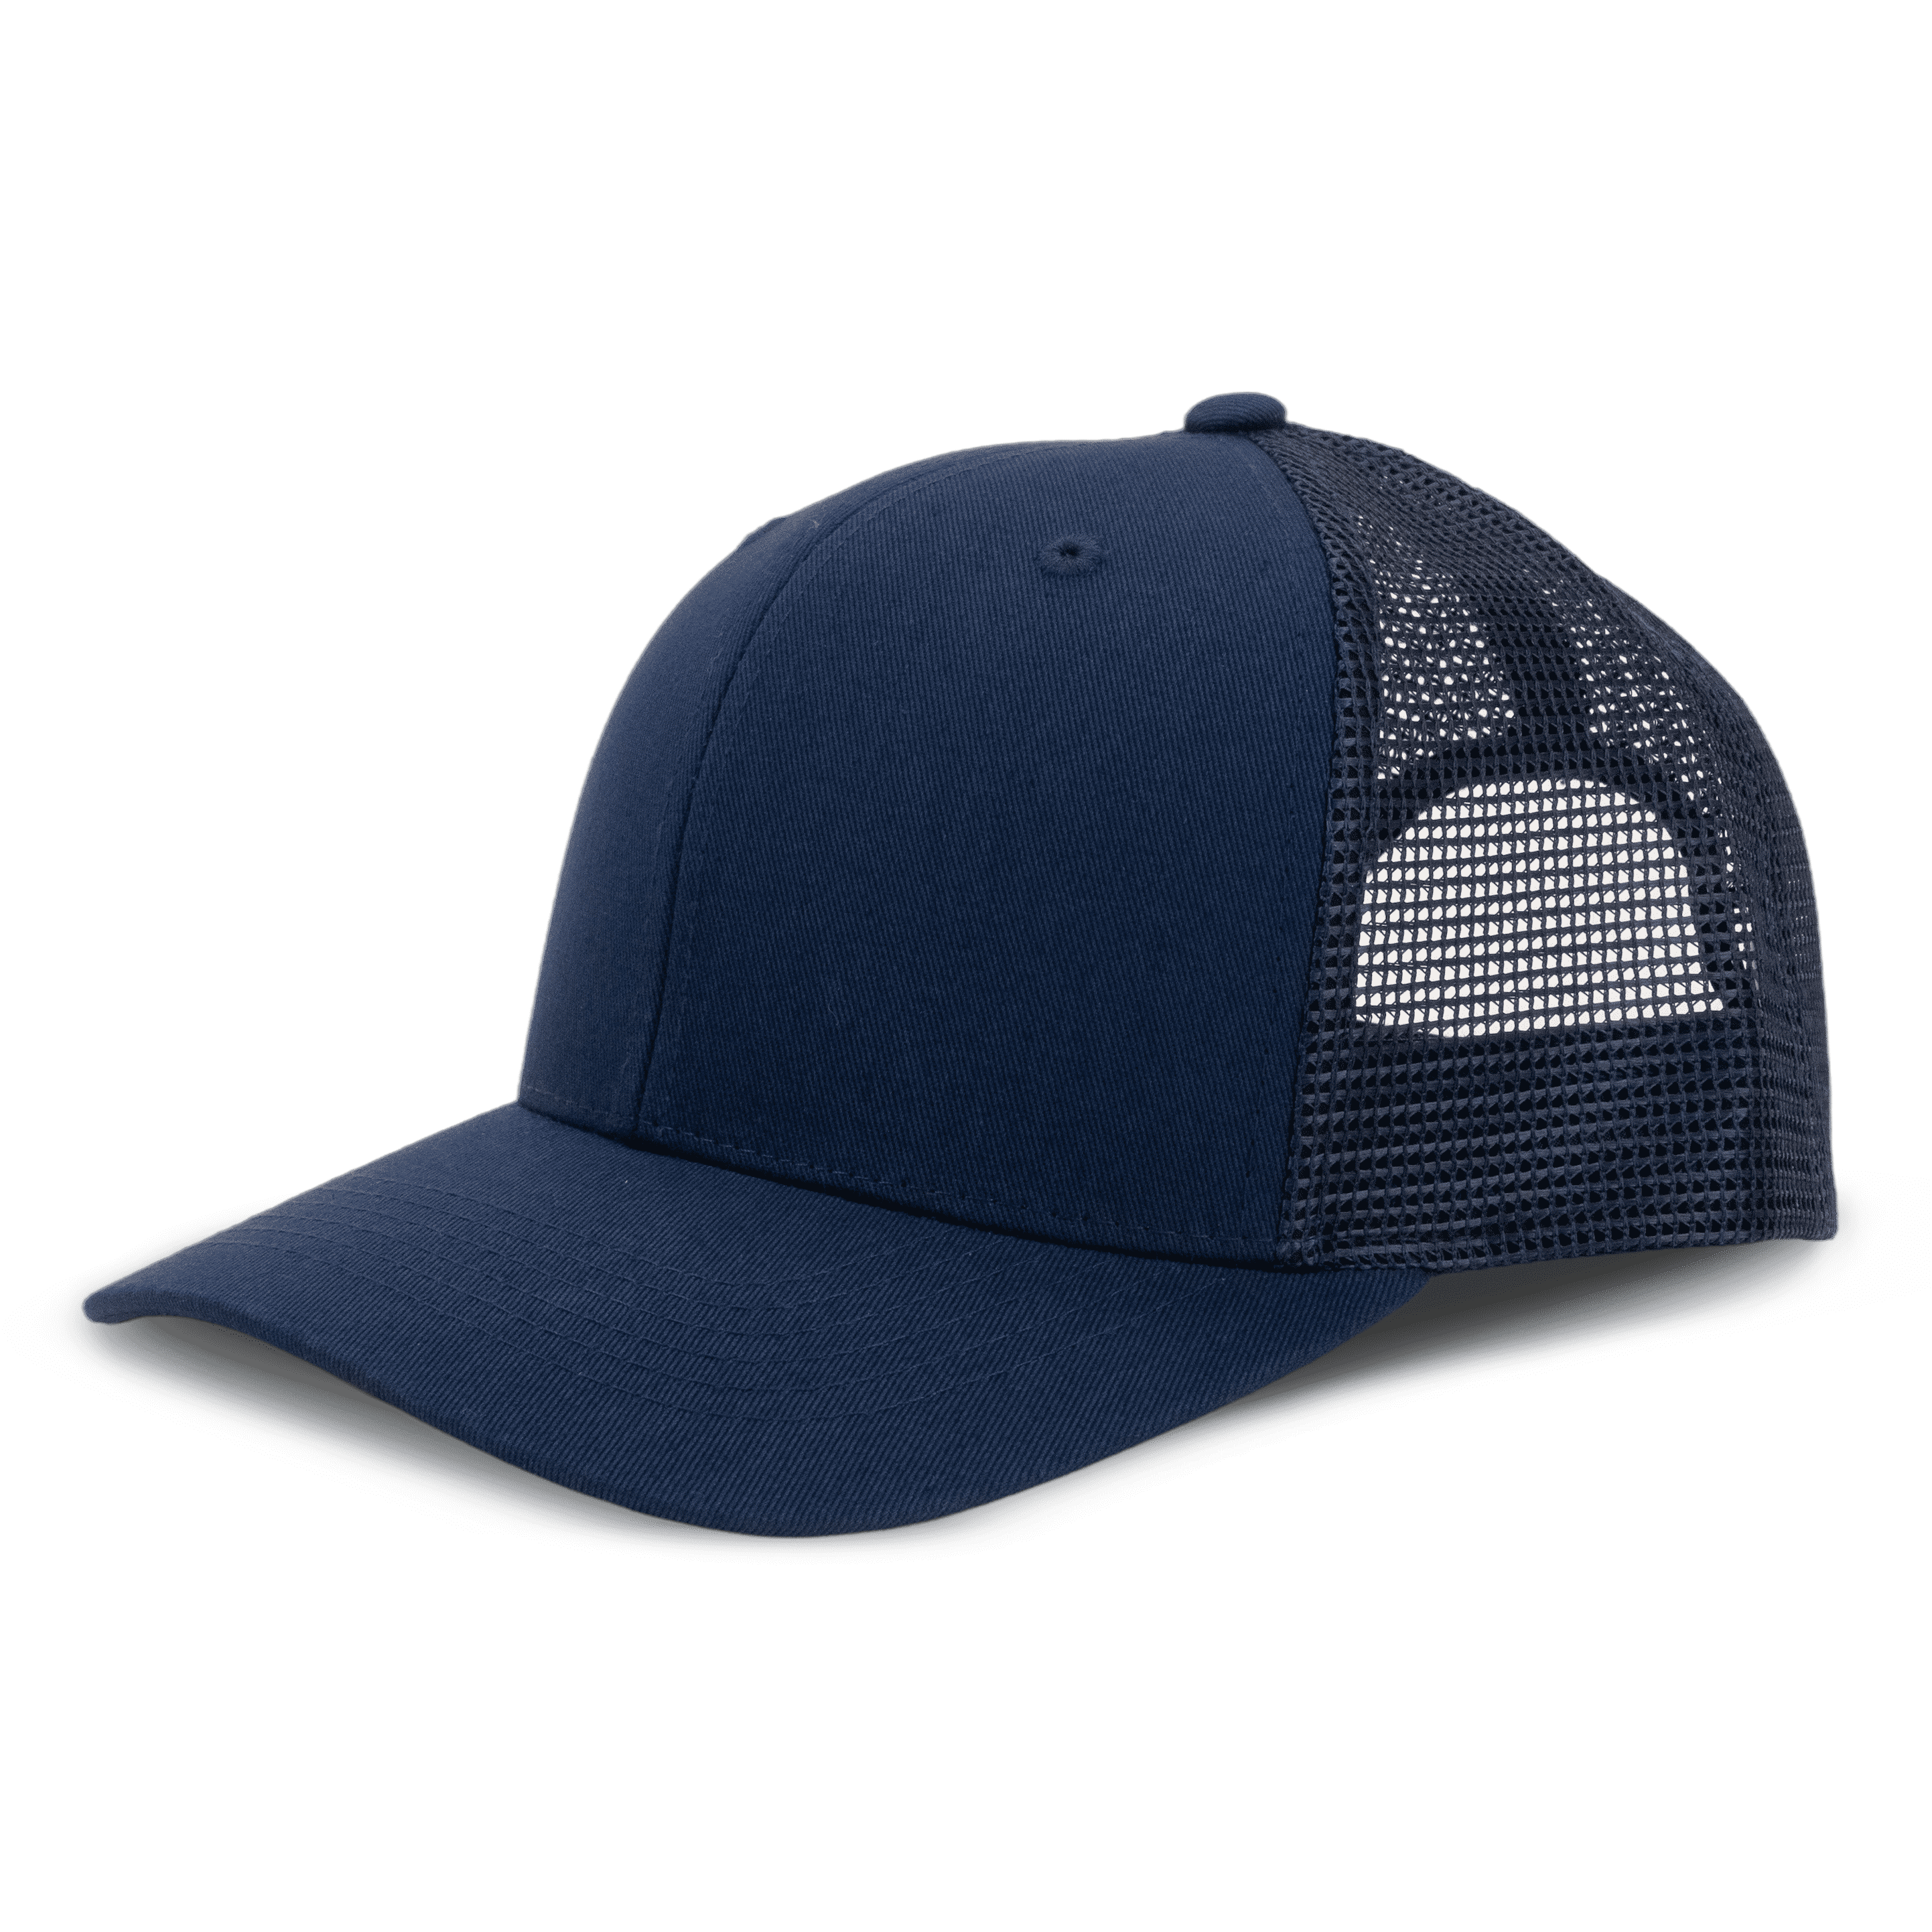 Hudson - 6 Panel Trucker Hat